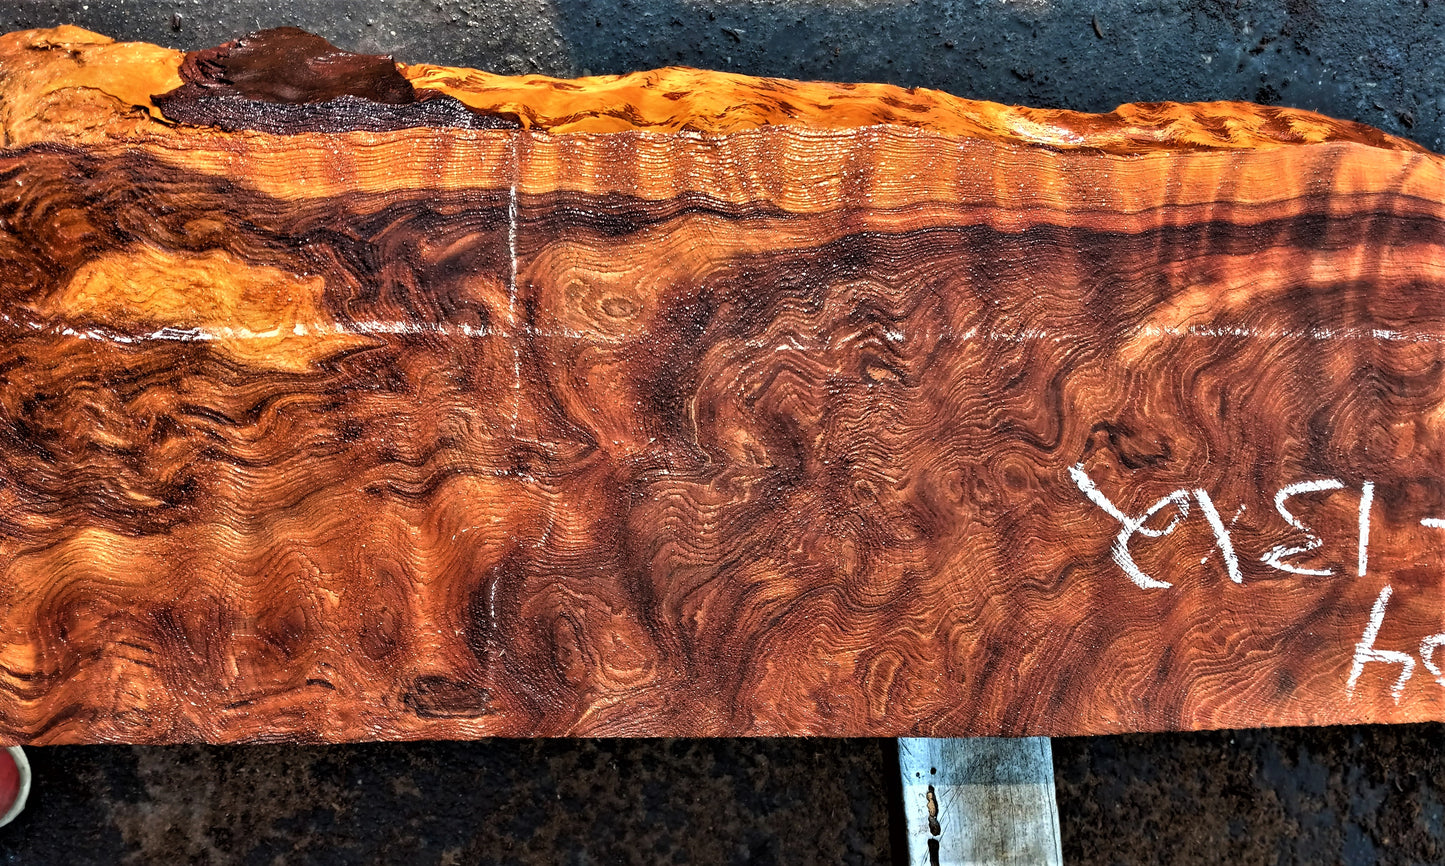 Quilted redwood | guitar billet | wood turning | DIY crafts | g23-0704